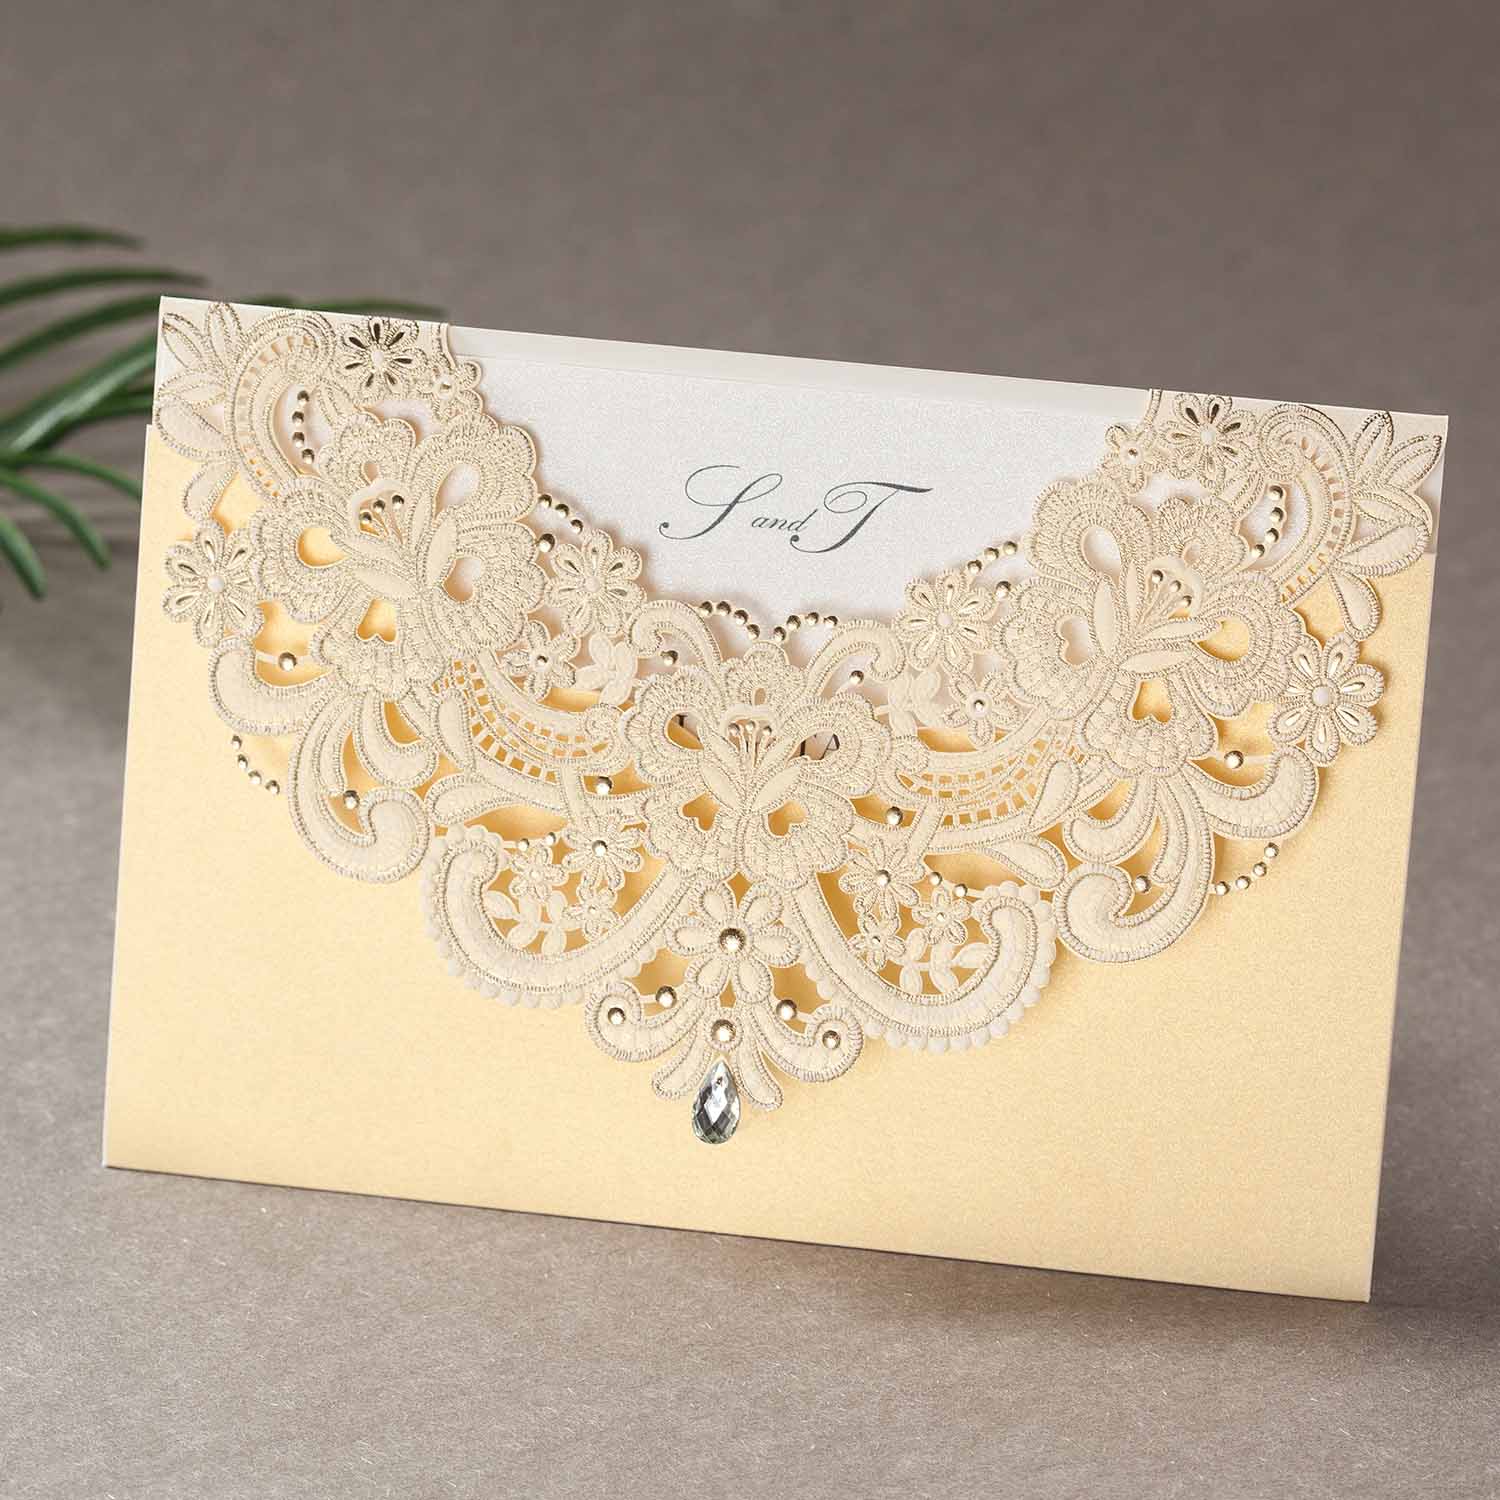 Laser cut wedding invitations - CW6115